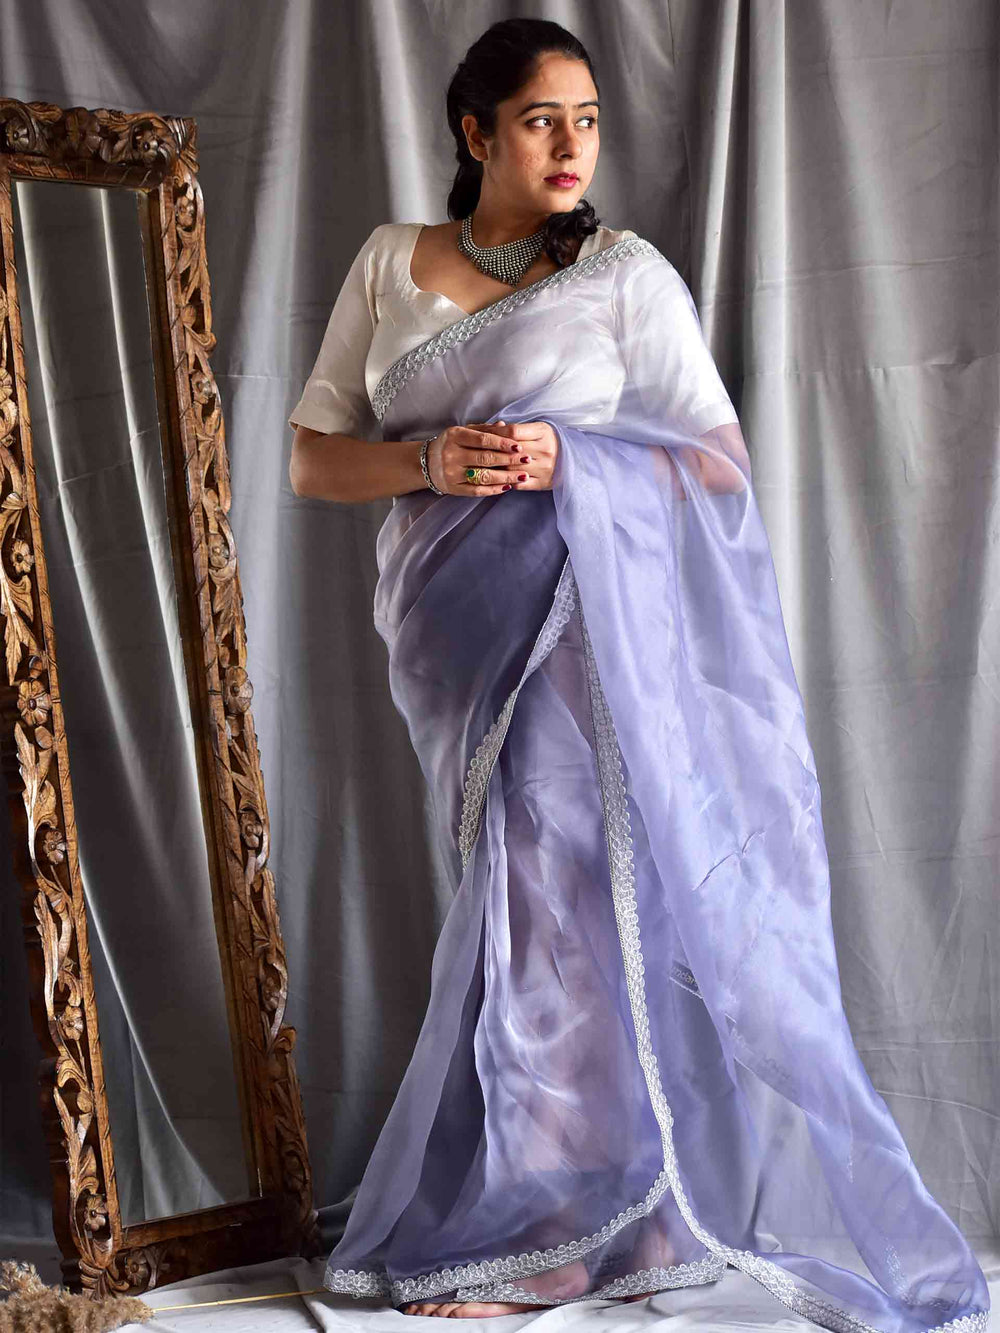 Modern Farewell Sarees Look | Saree designs, Saree, Half saree